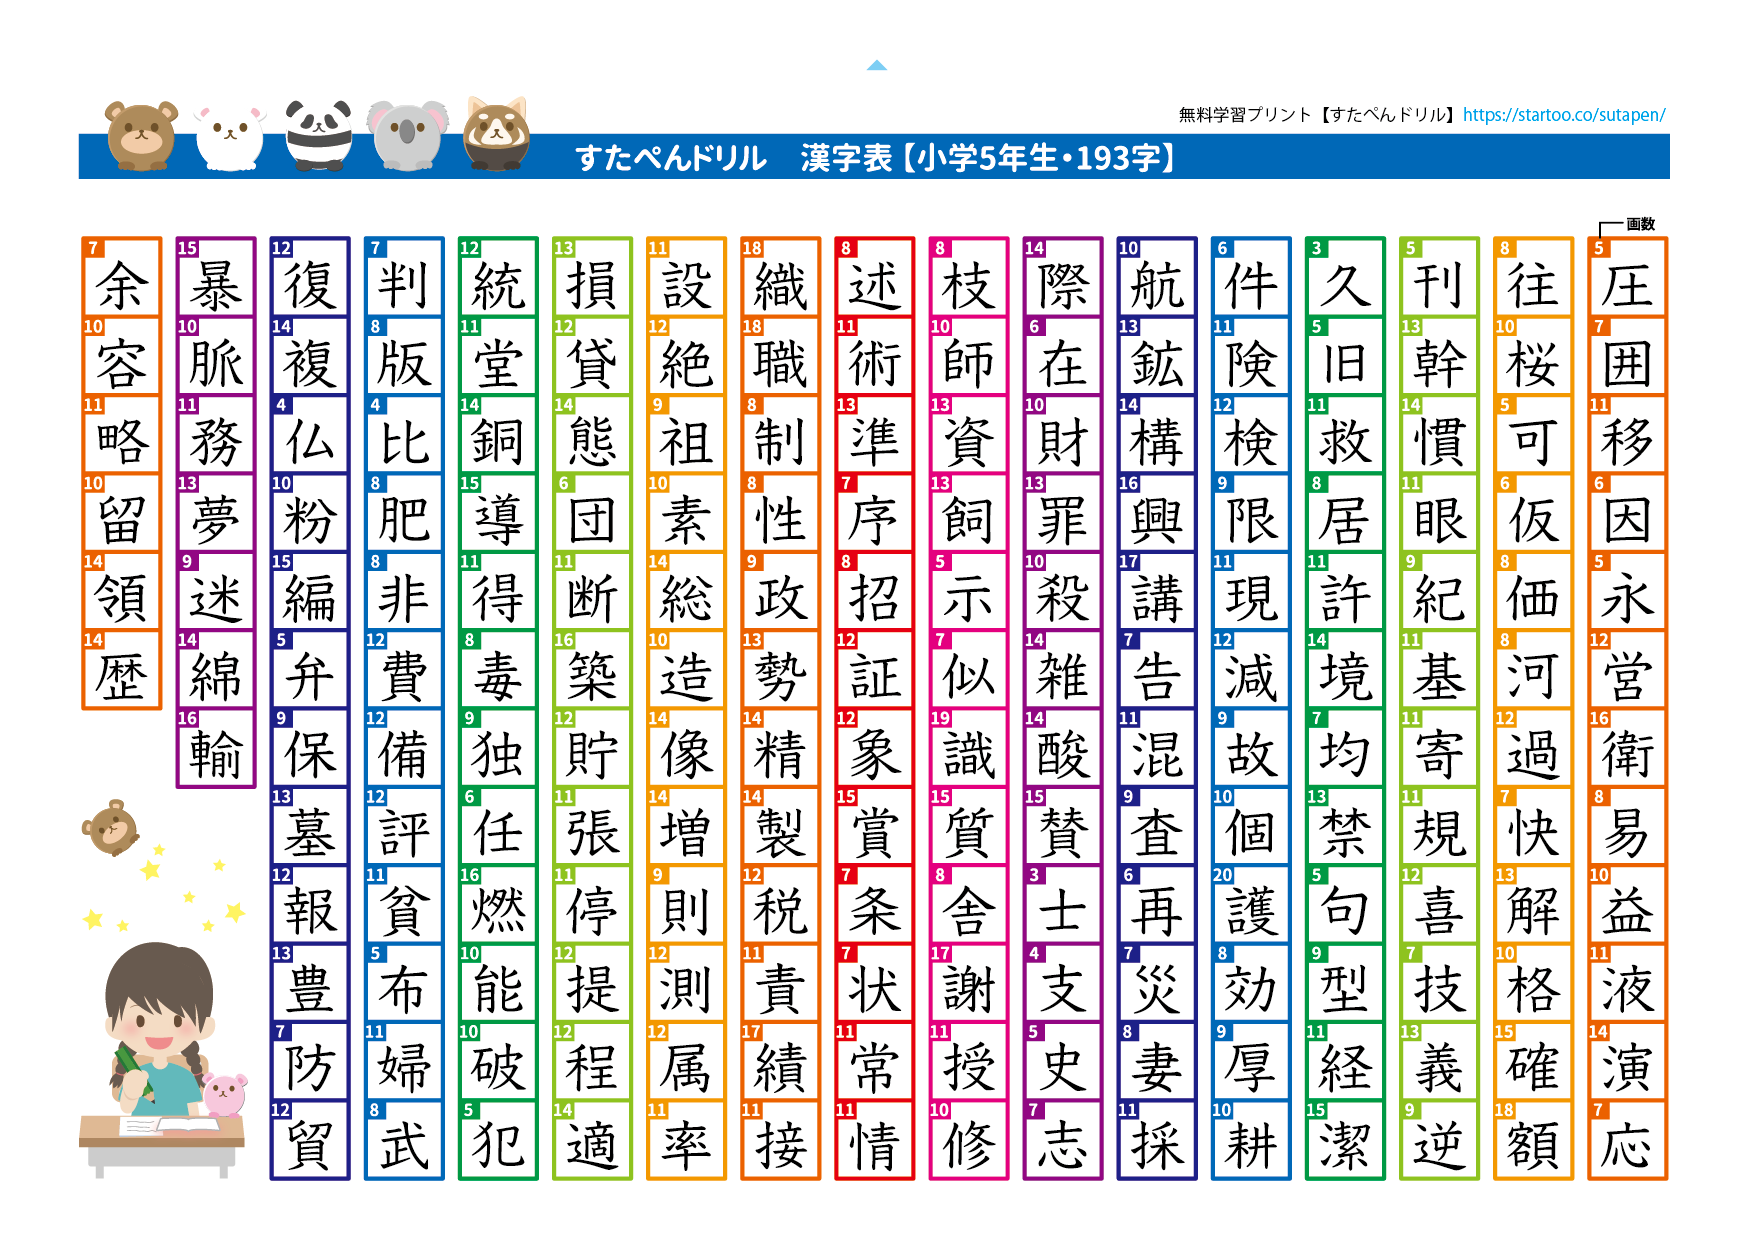 小学２年生と５年生の漢字の表